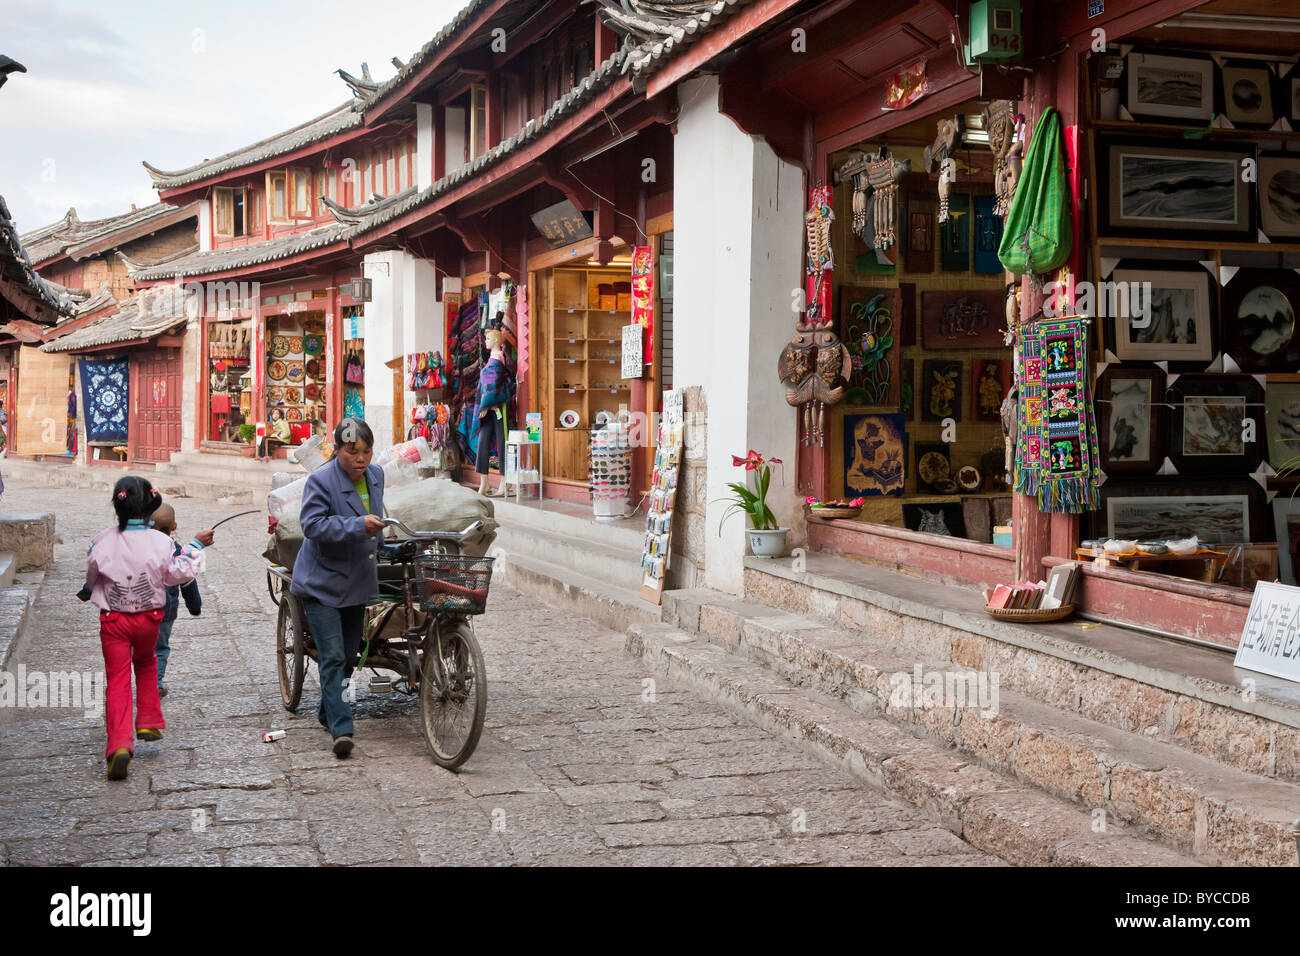 Donna con il triciclo che trasportano merci in uno stretto vicolo lastricato a Lijiang old town, nella provincia dello Yunnan in Cina. JMH4756 Foto Stock